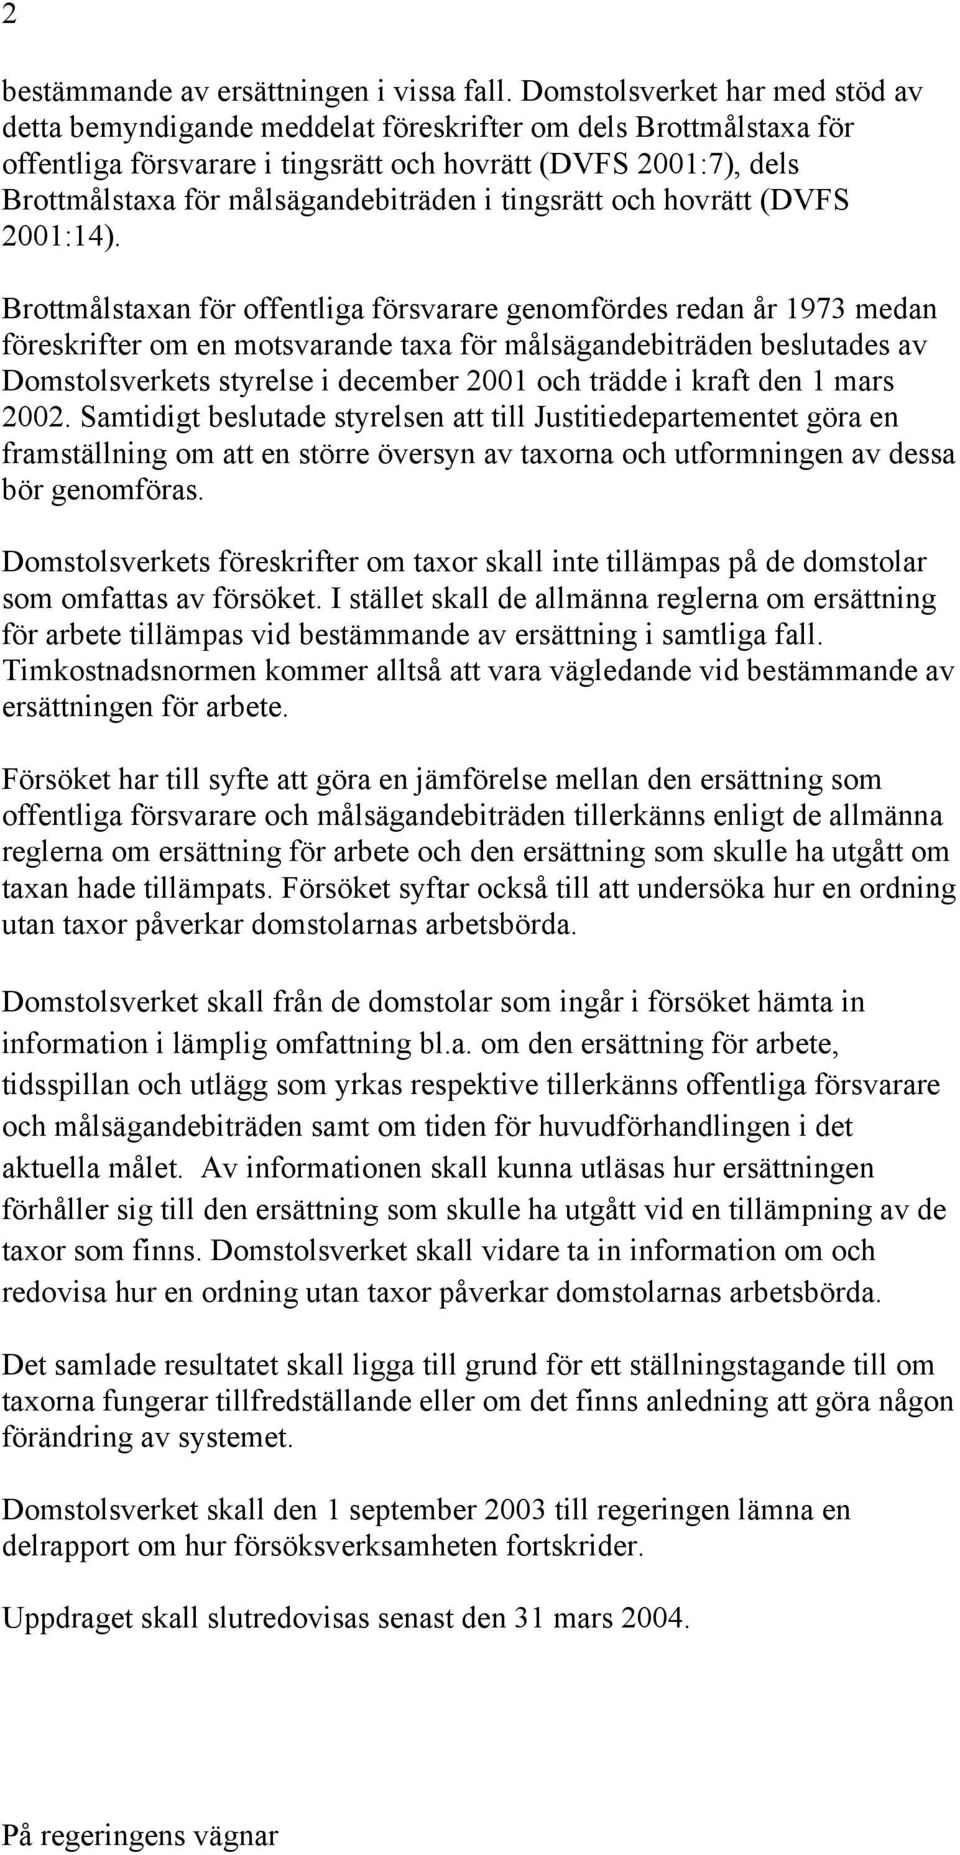 målsägandebiträden i tingsrätt och hovrätt (DVFS 2001:14).